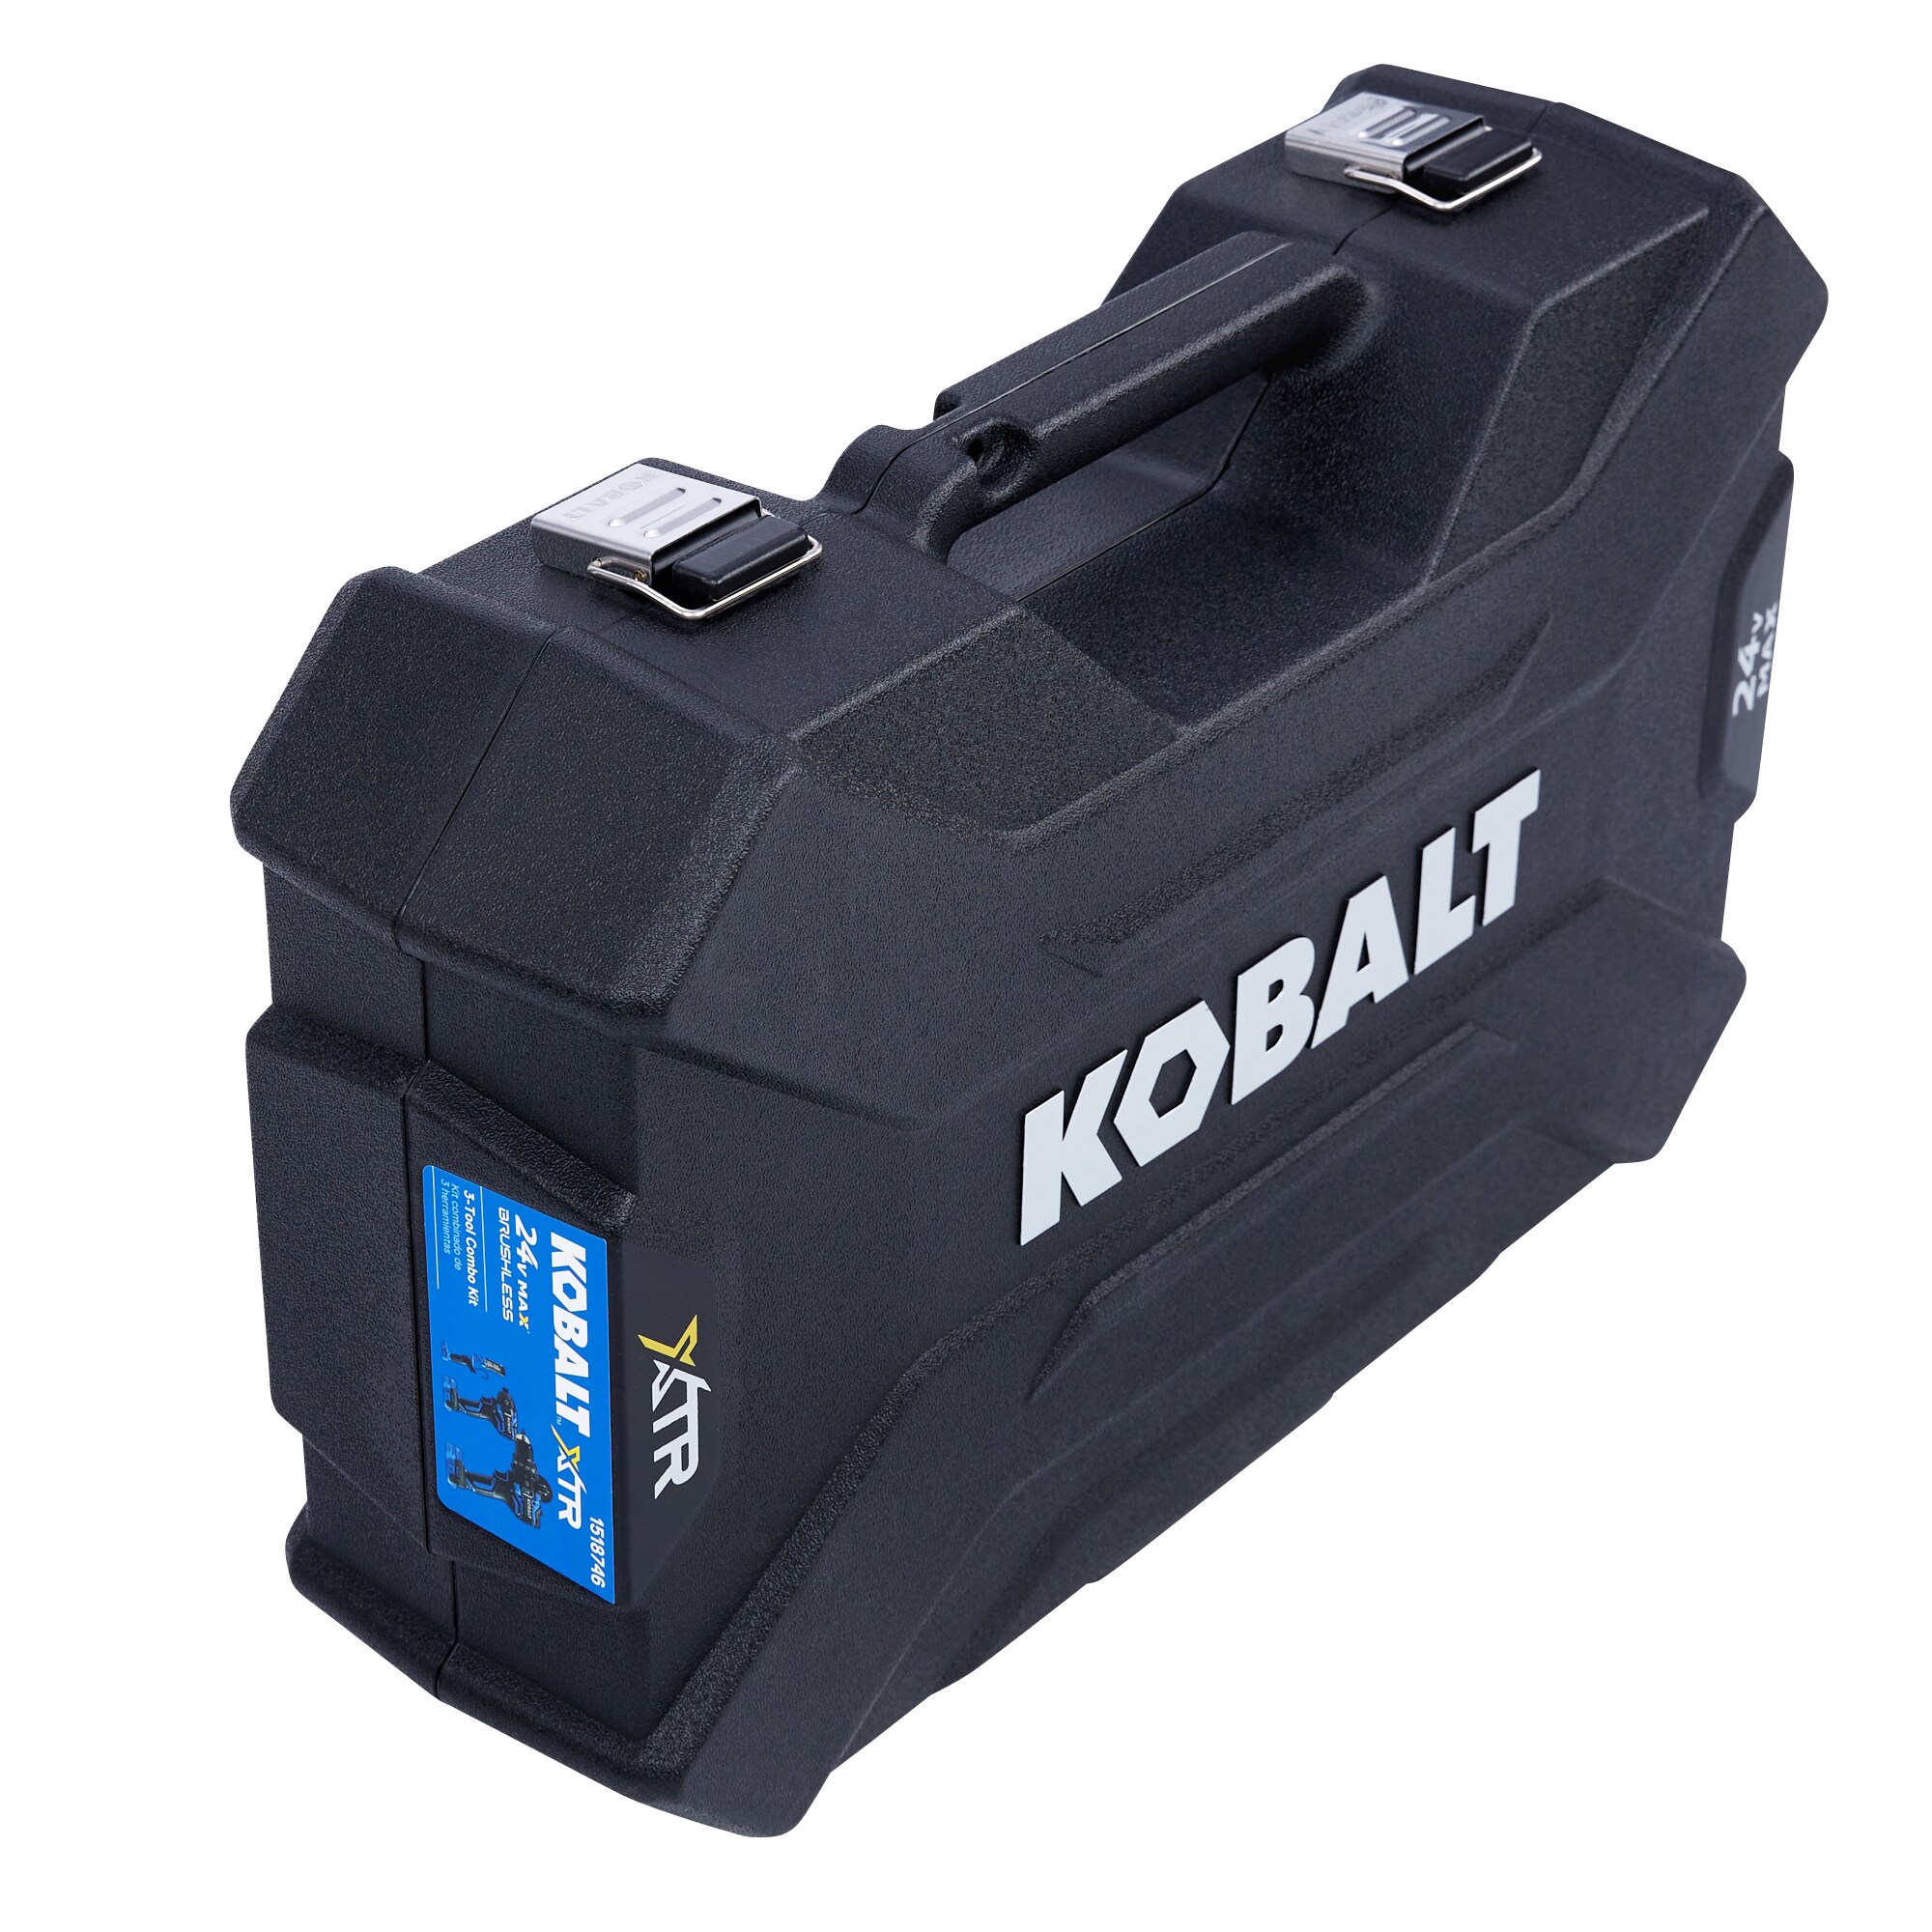 Kobalt Kobalt Xtr 24v 3 Tool Combo Kit In The Power Tool Combo Kits